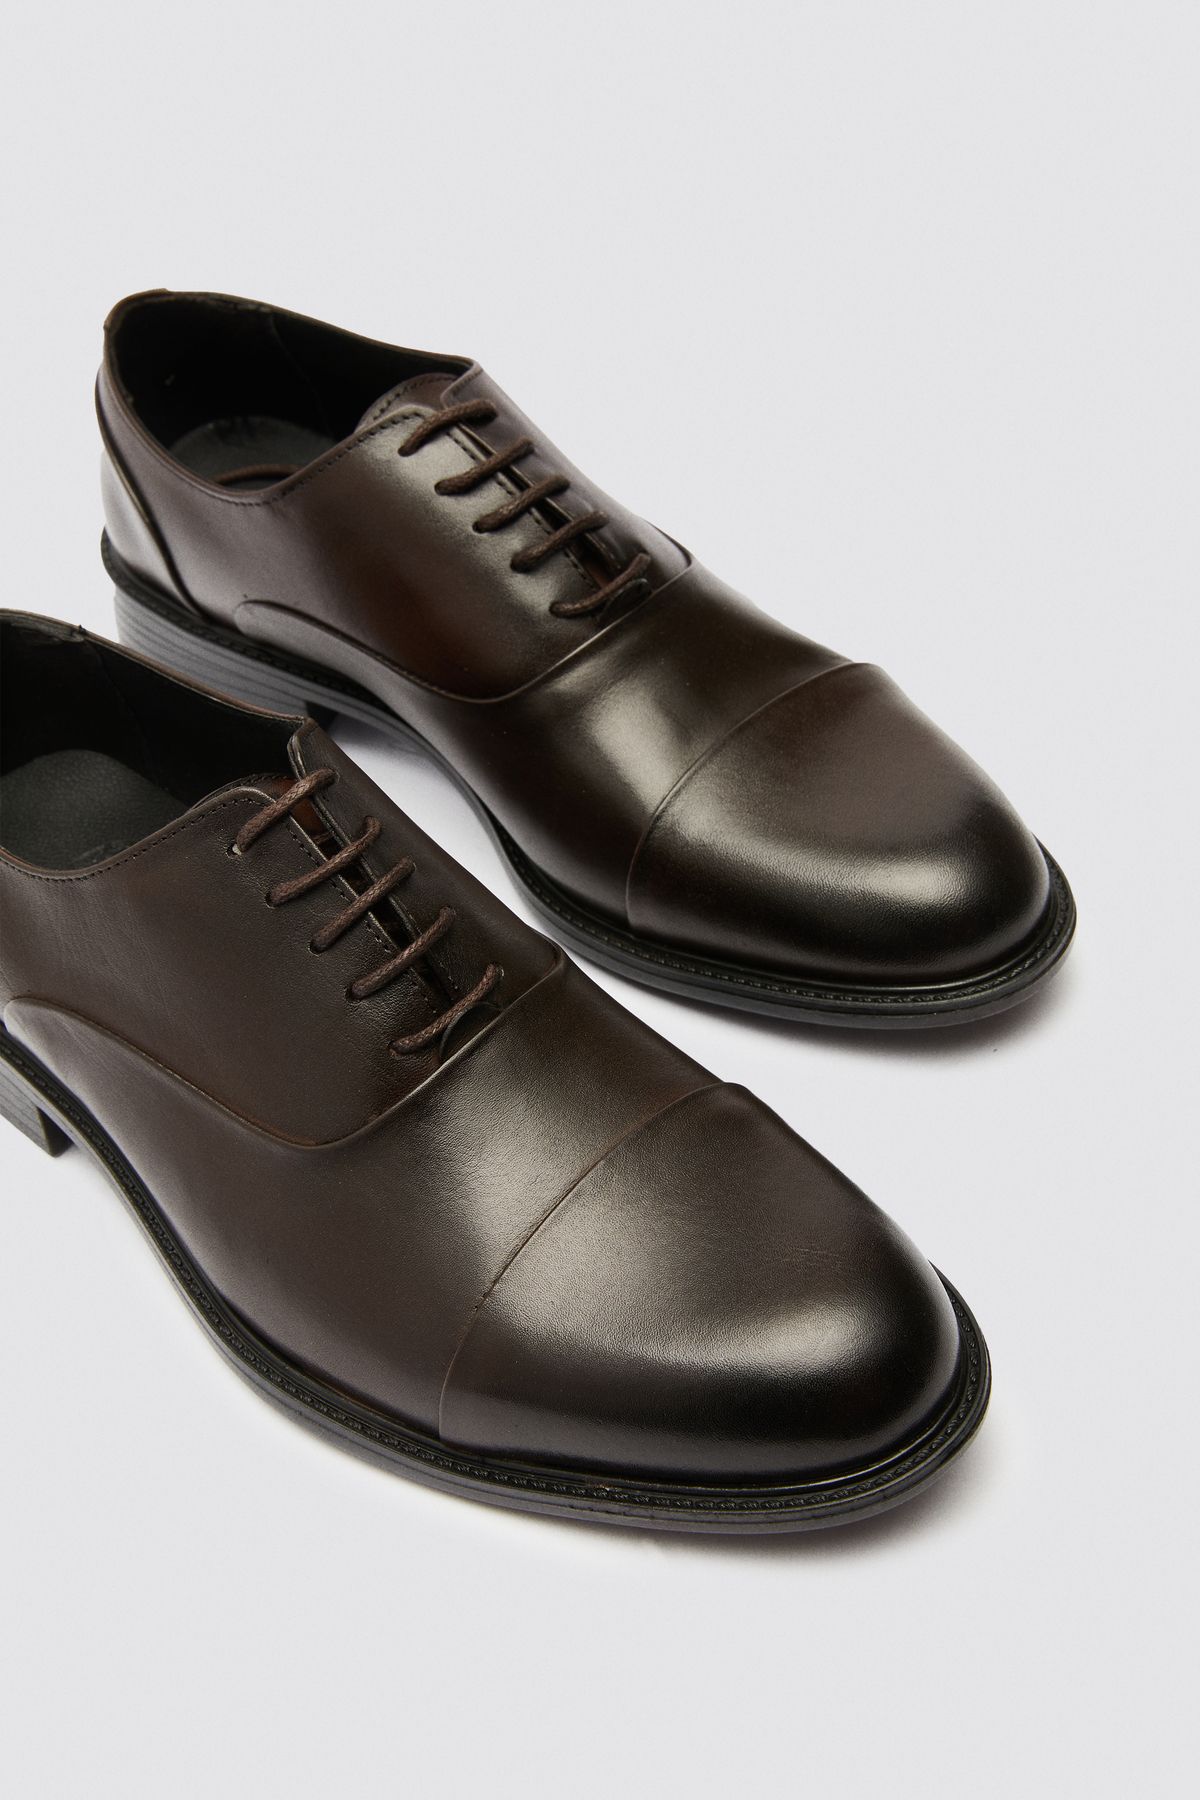 D'S Damat Kahverengi Klasik Deri Ayakkabı